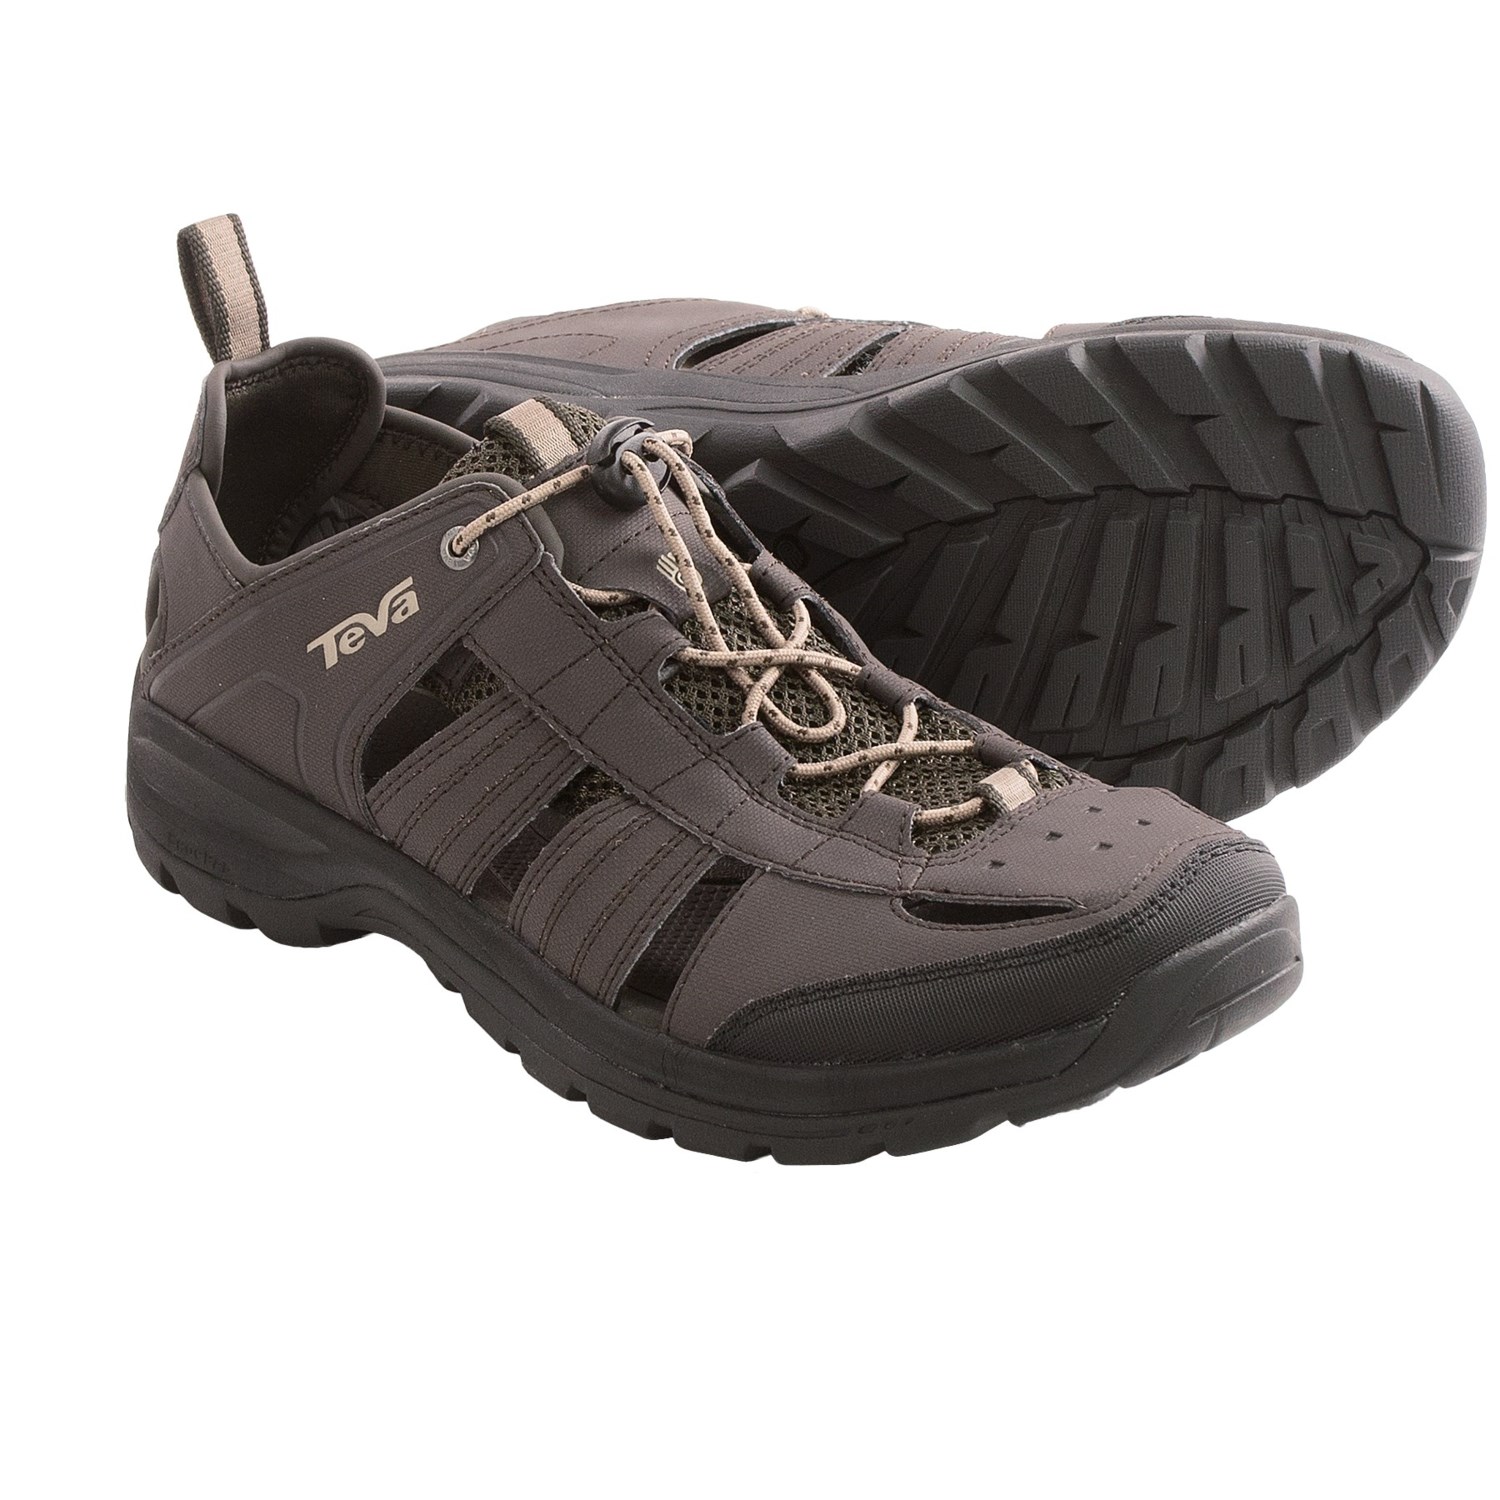 Teva Kitling Sandals (For Men) in Black Olive